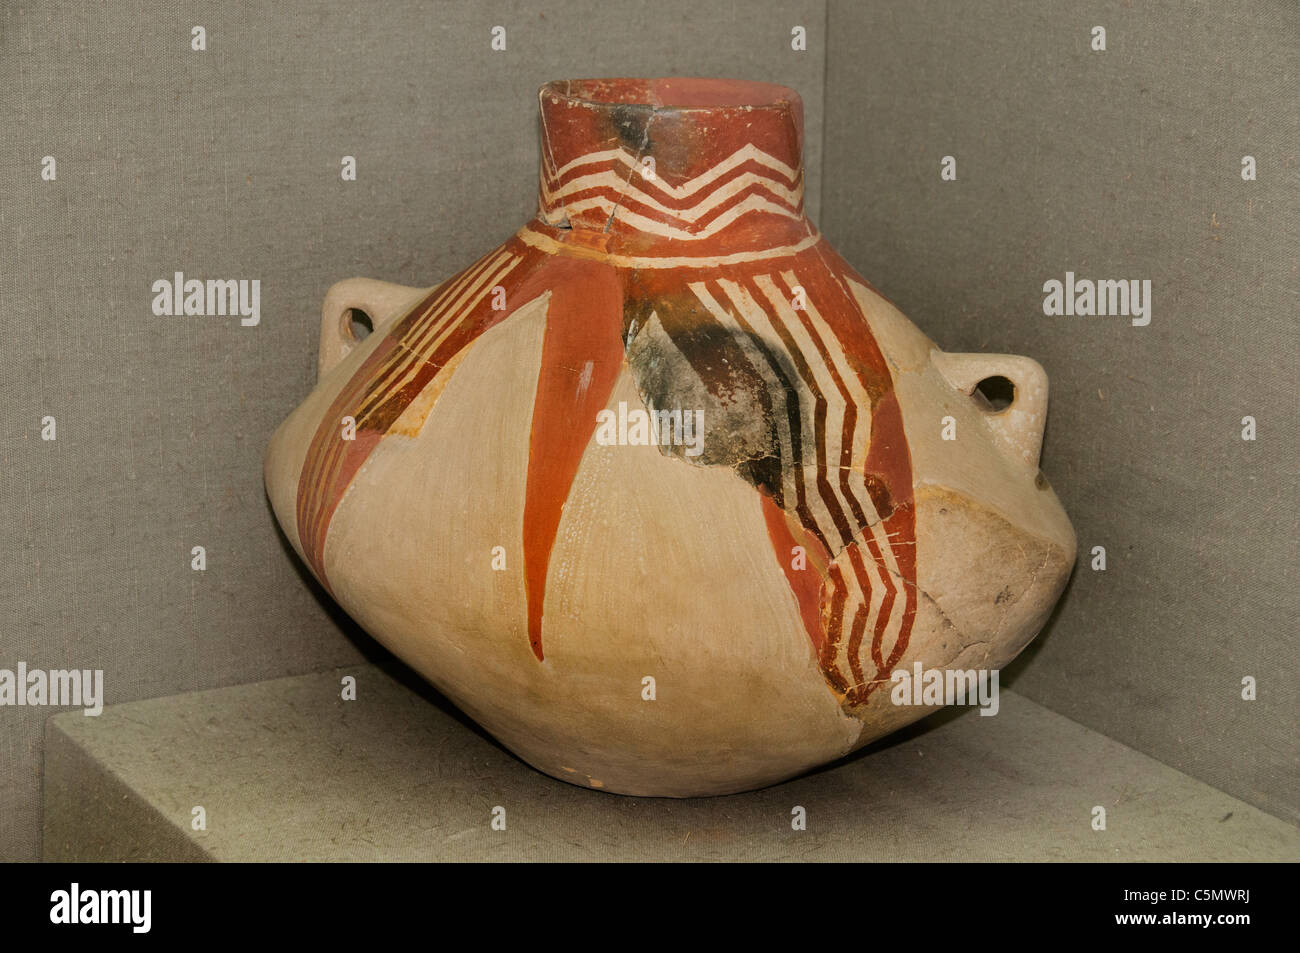 ZWEI behandelt gemalt POT Baked Ton frühen Chalkolithikum, zweite Hälfte des 6. Jahrtausends v. Chr. Hacilar/Burdur Türkei Stockfoto